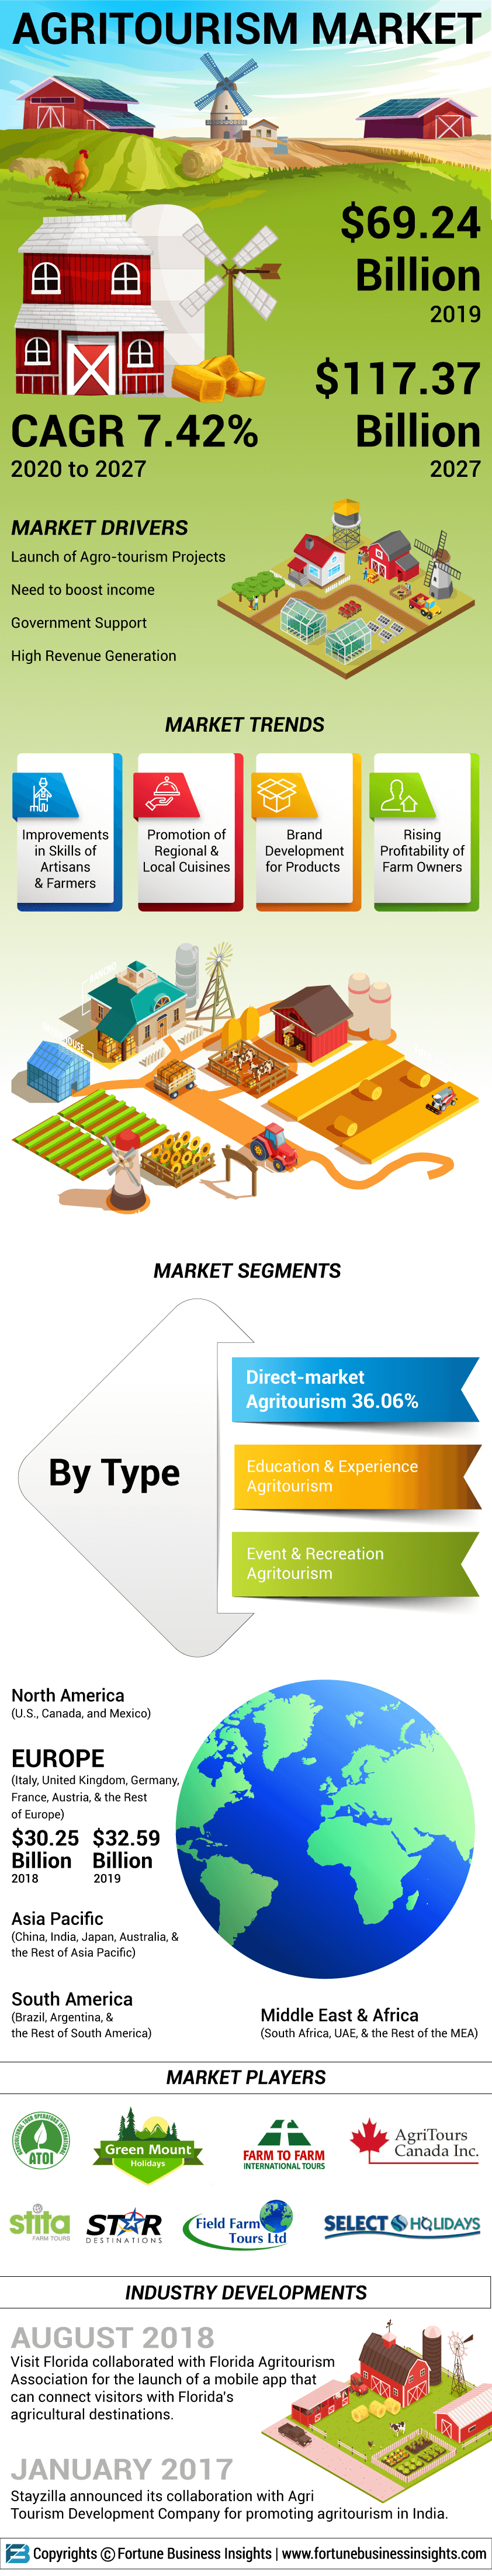 Agritourism Market